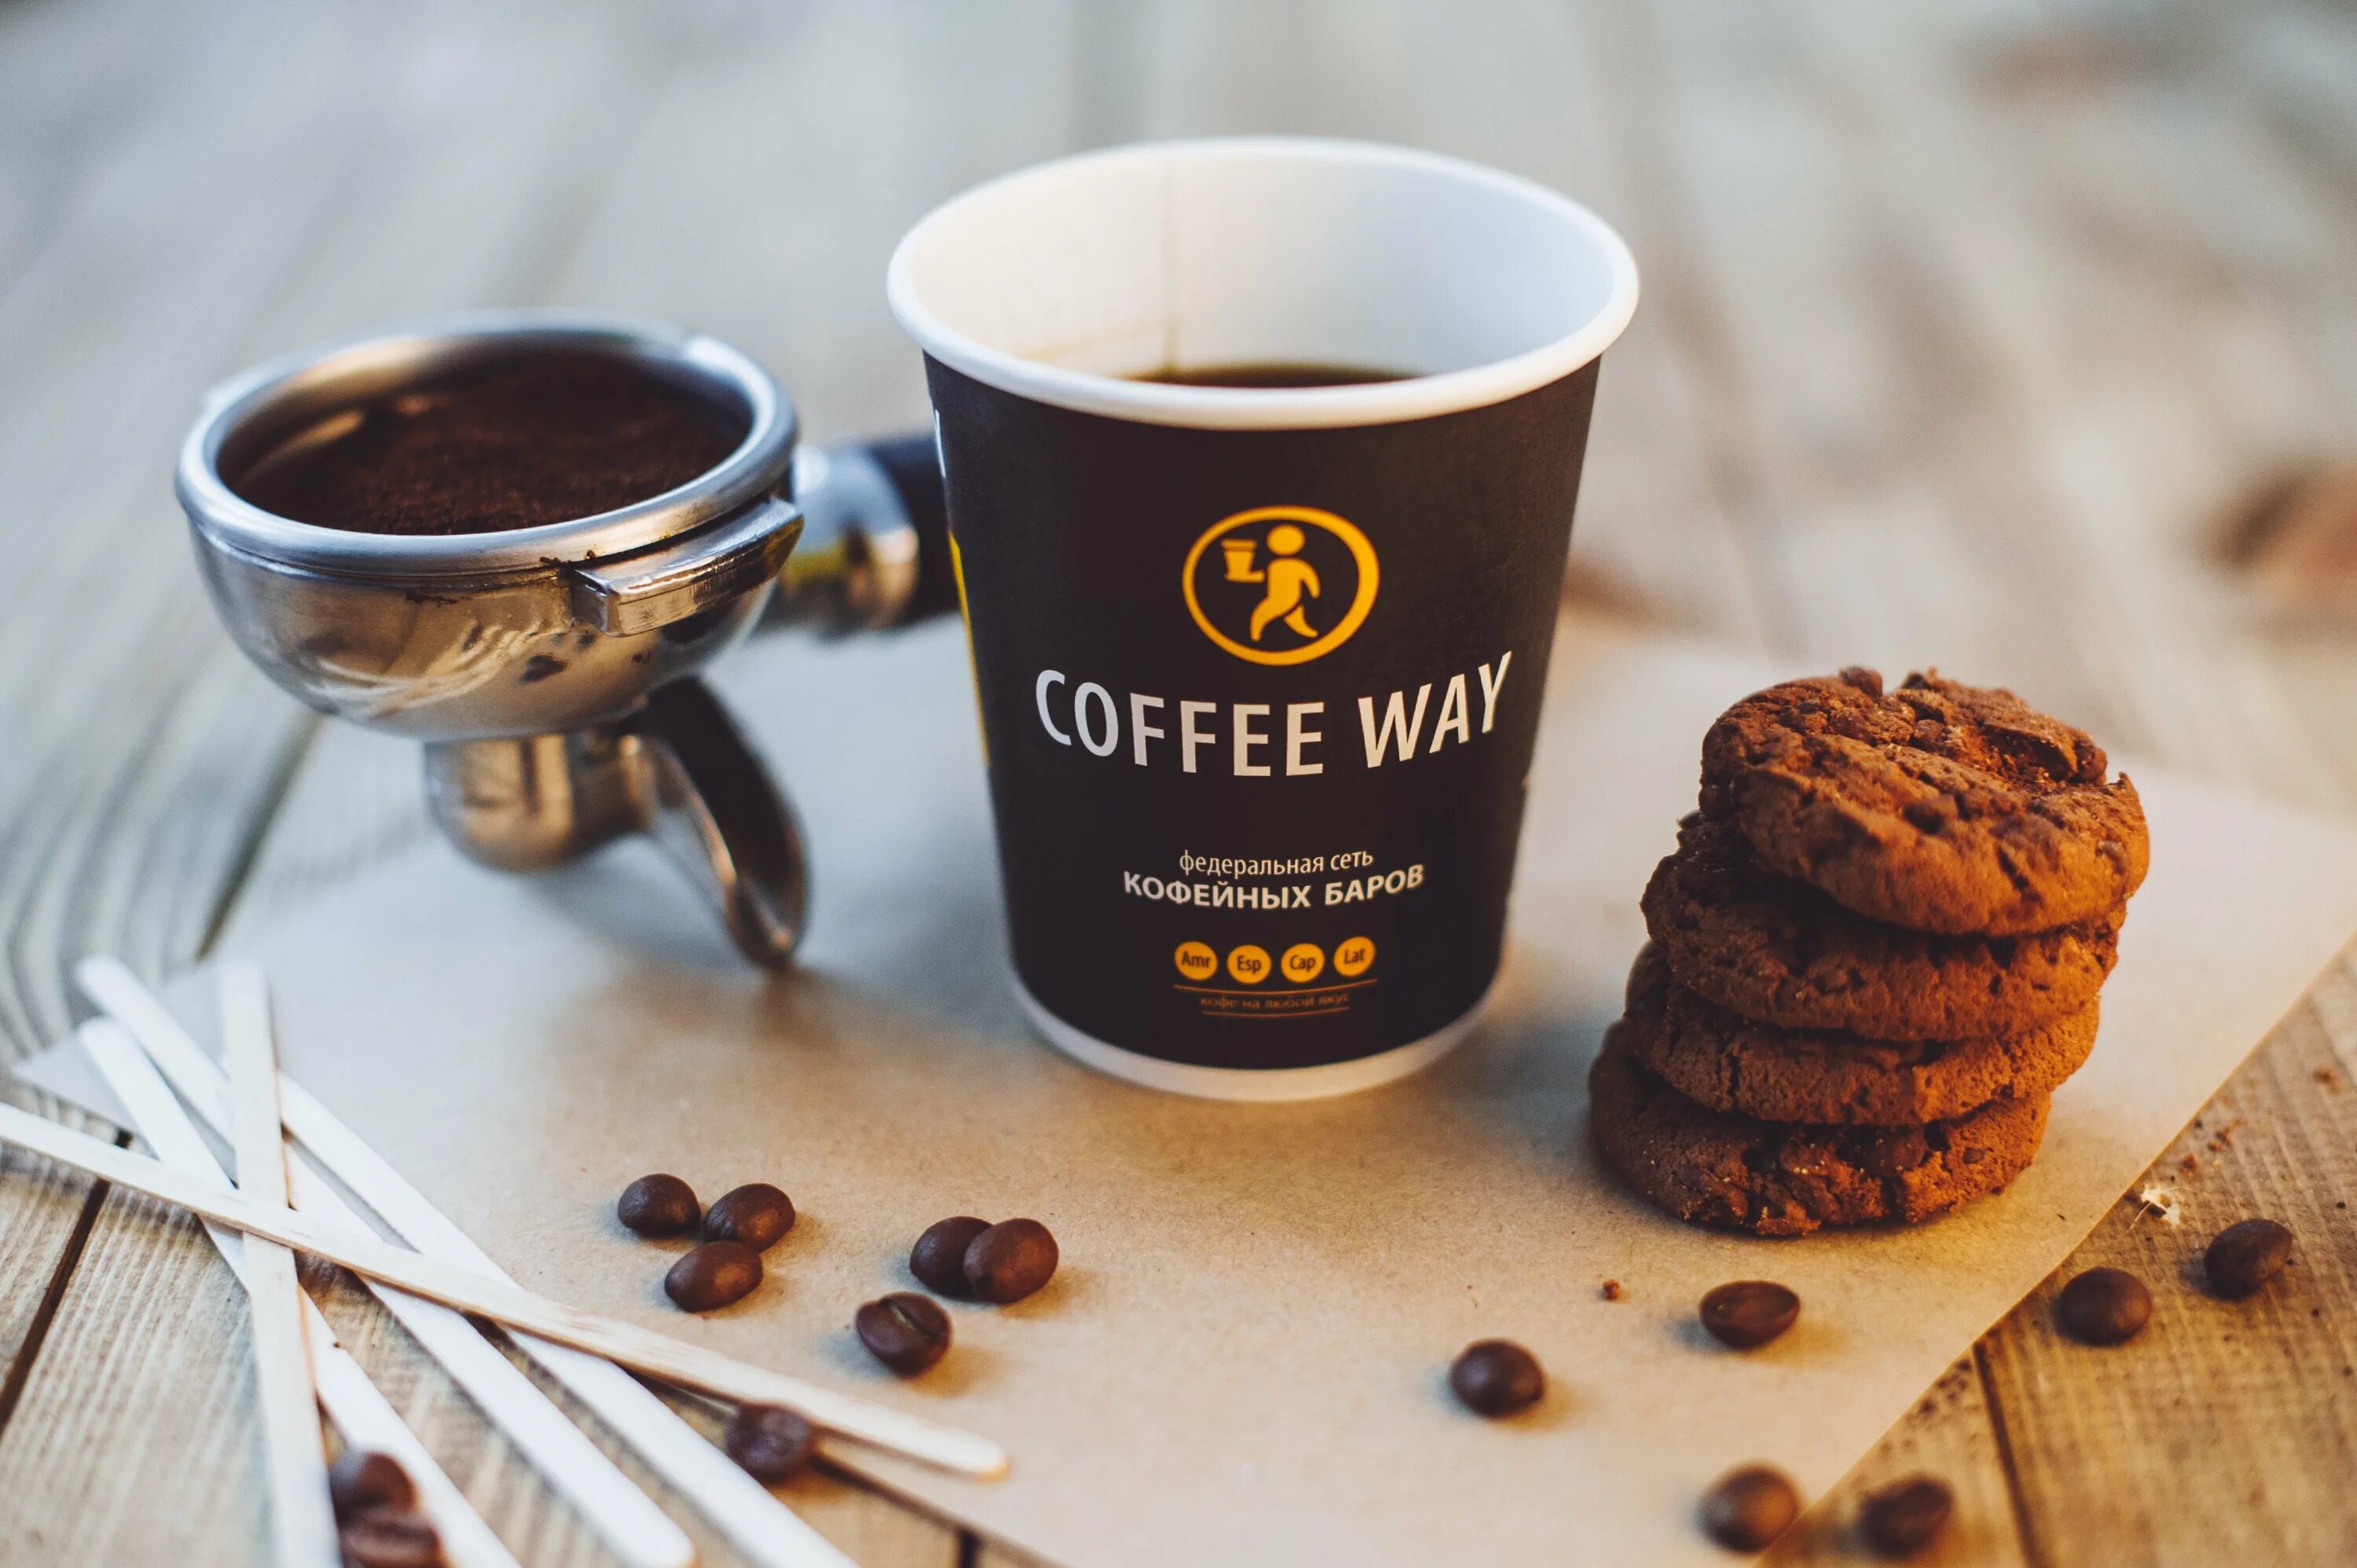 Кофе ое. Кофейня "Coffee way" (Донецк). Реклама кофе. Реклама кофейни. Кофе в кофейне.